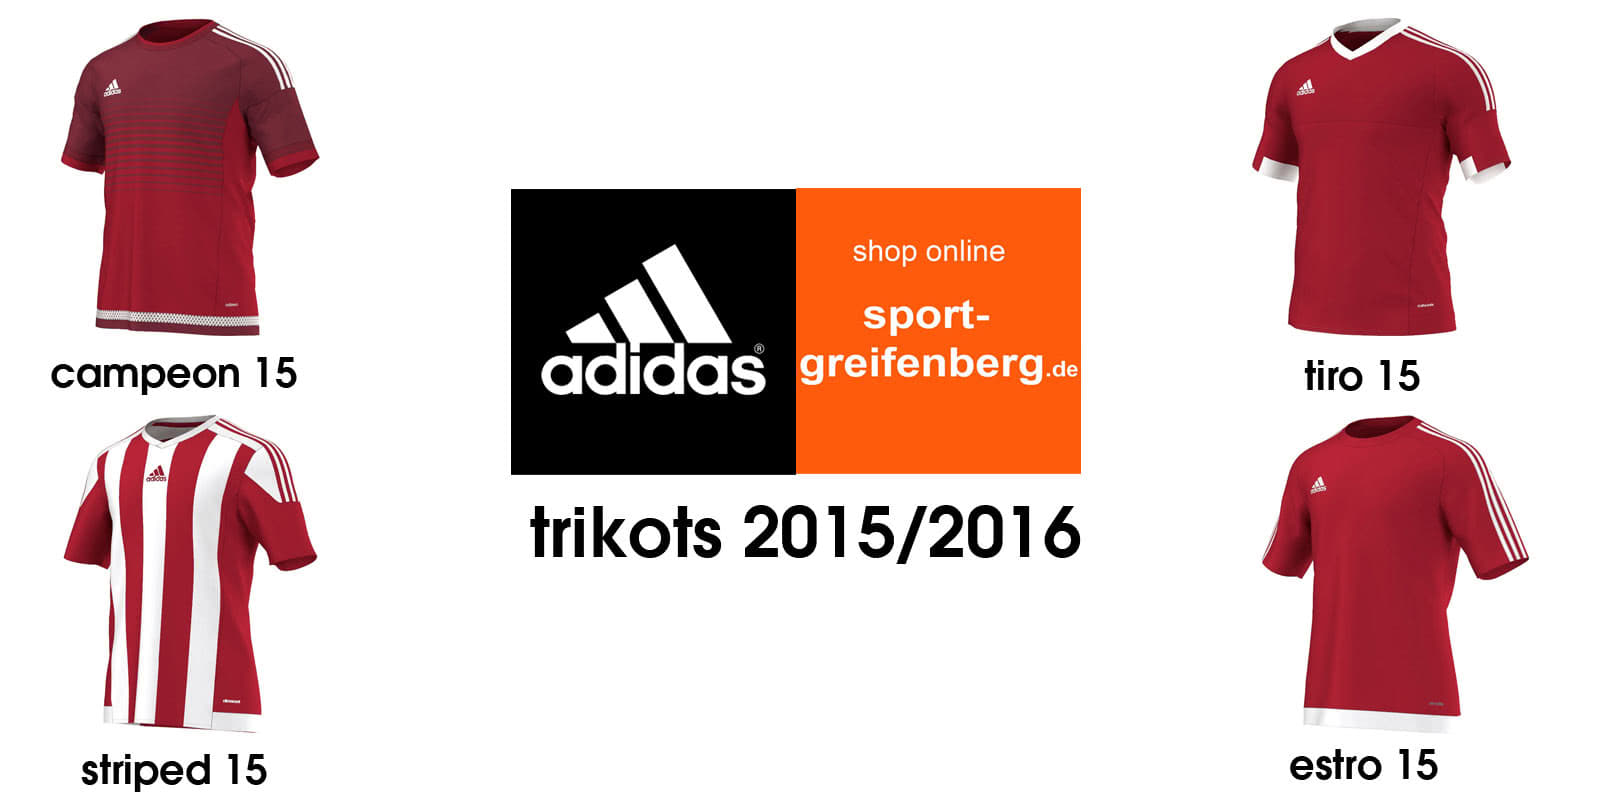 adidas teamsport katalog 2015/16